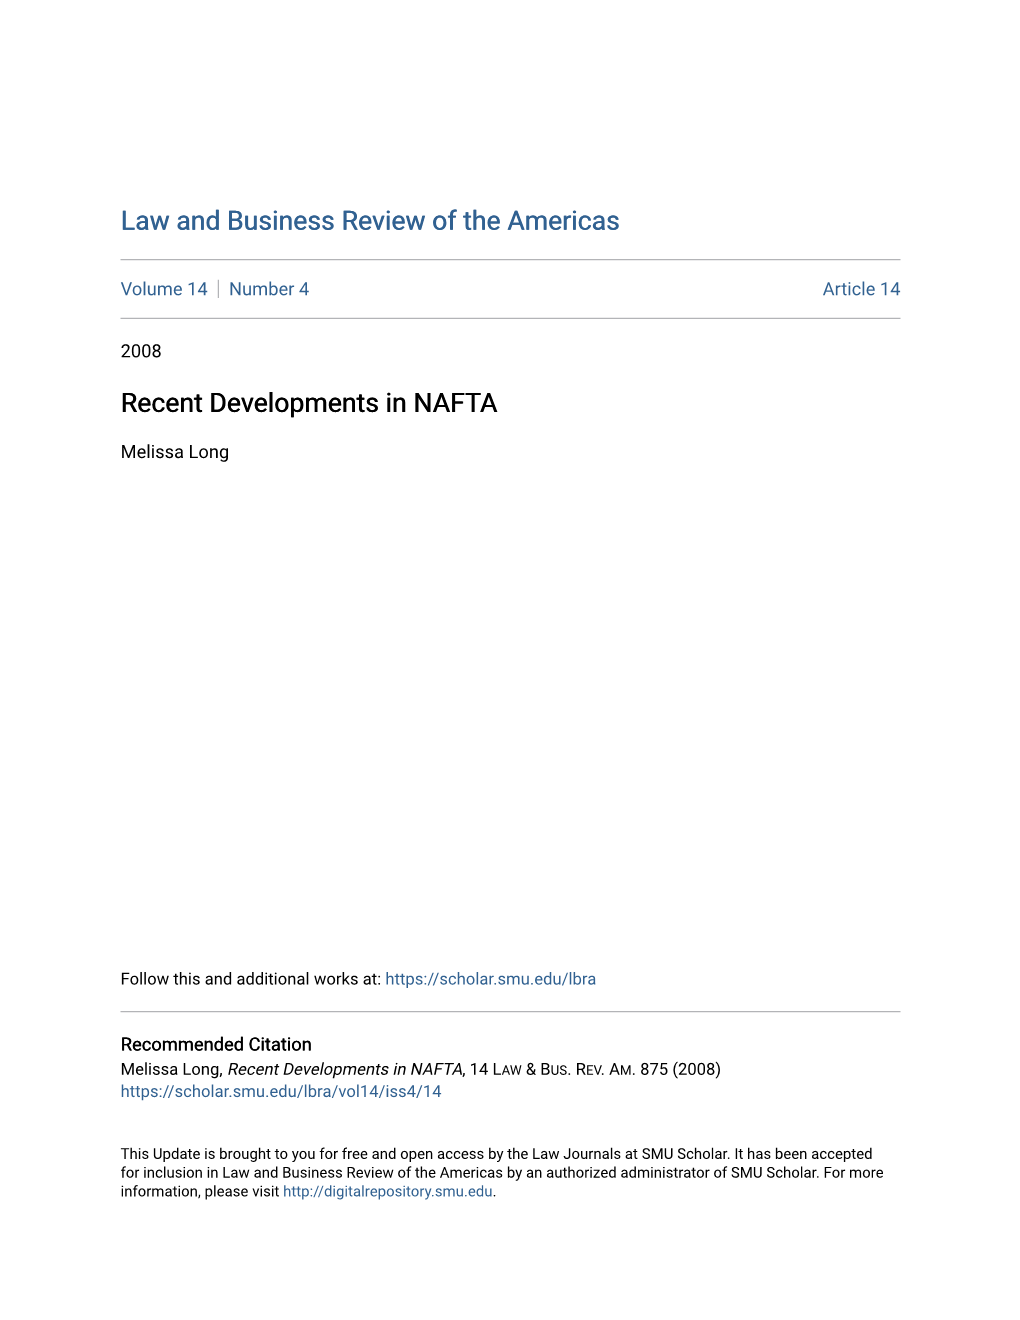 Recent Developments in NAFTA